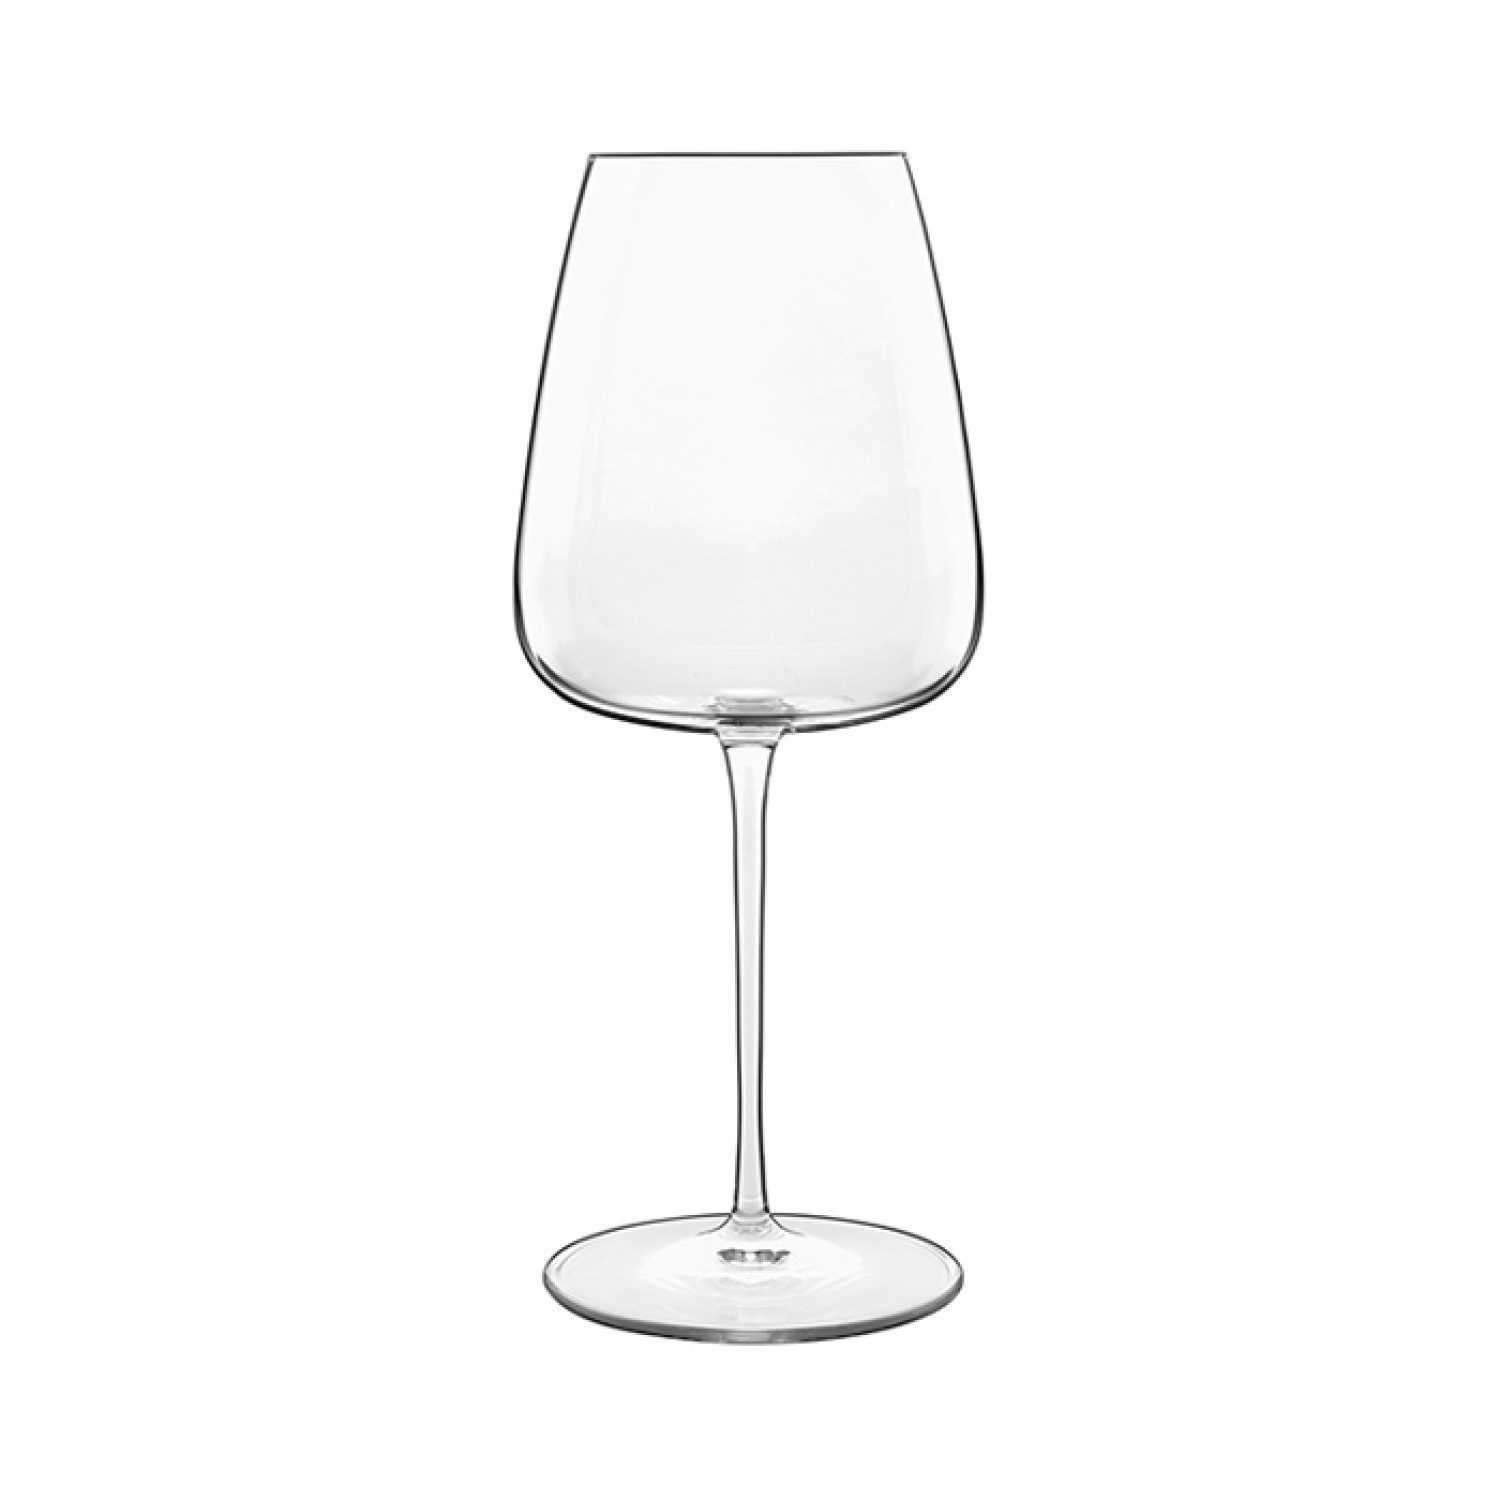 Luigi Bormioli Ποτήρι Κρασιού Κρυστάλλινο Σετ 6Τμχ. Sangiovese / Chianti 550ml Meravigliosi